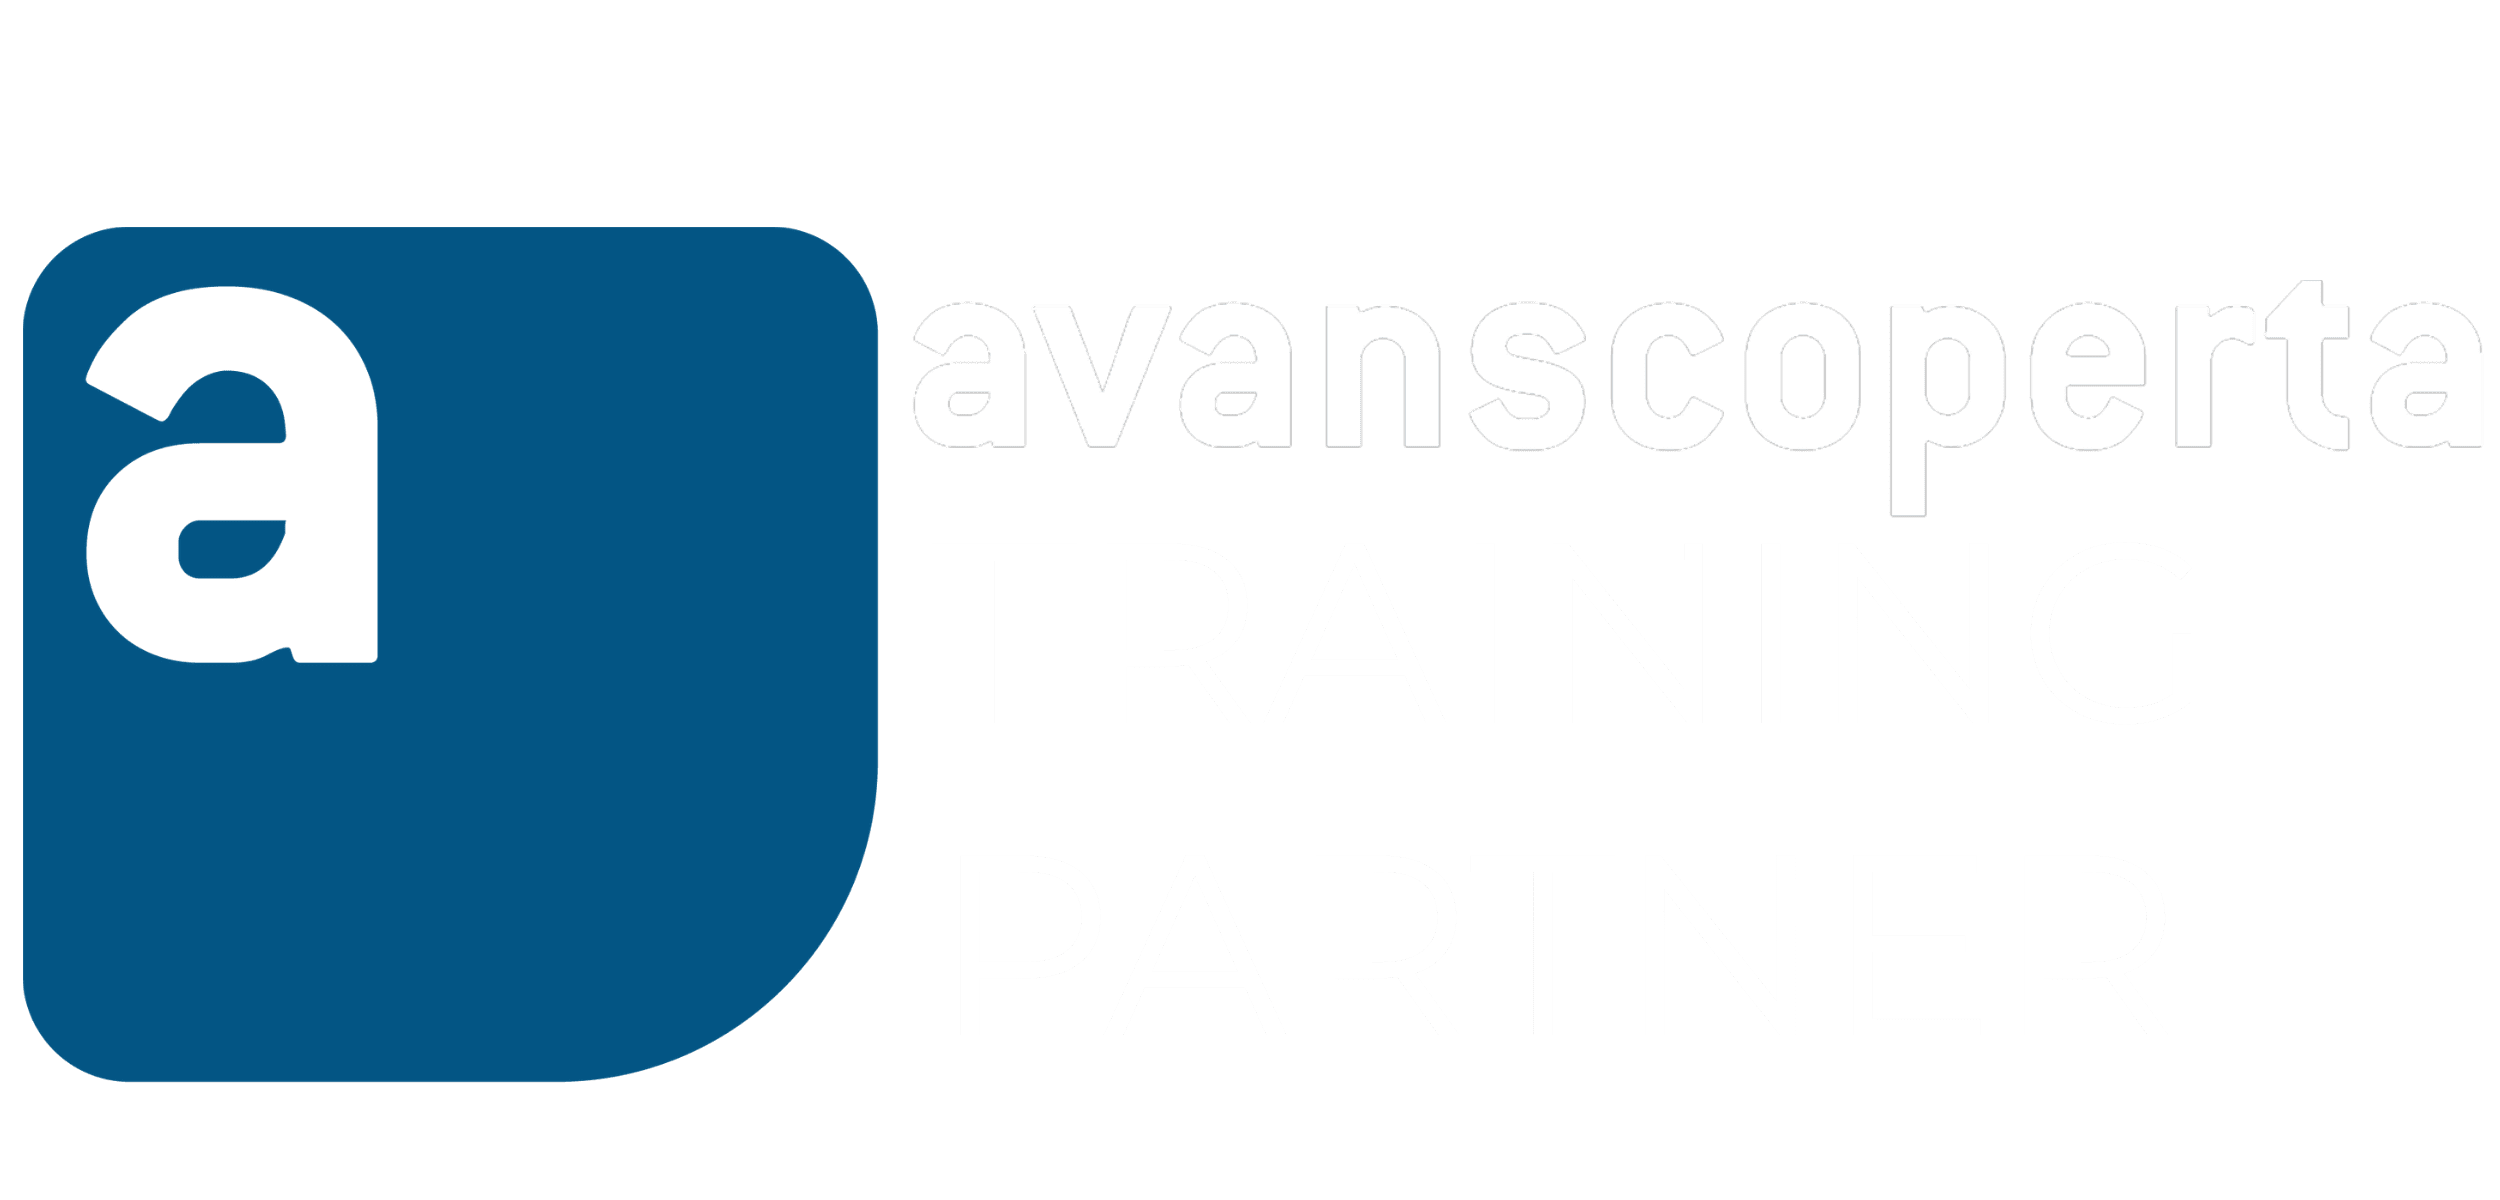 Avanscoperta training partner